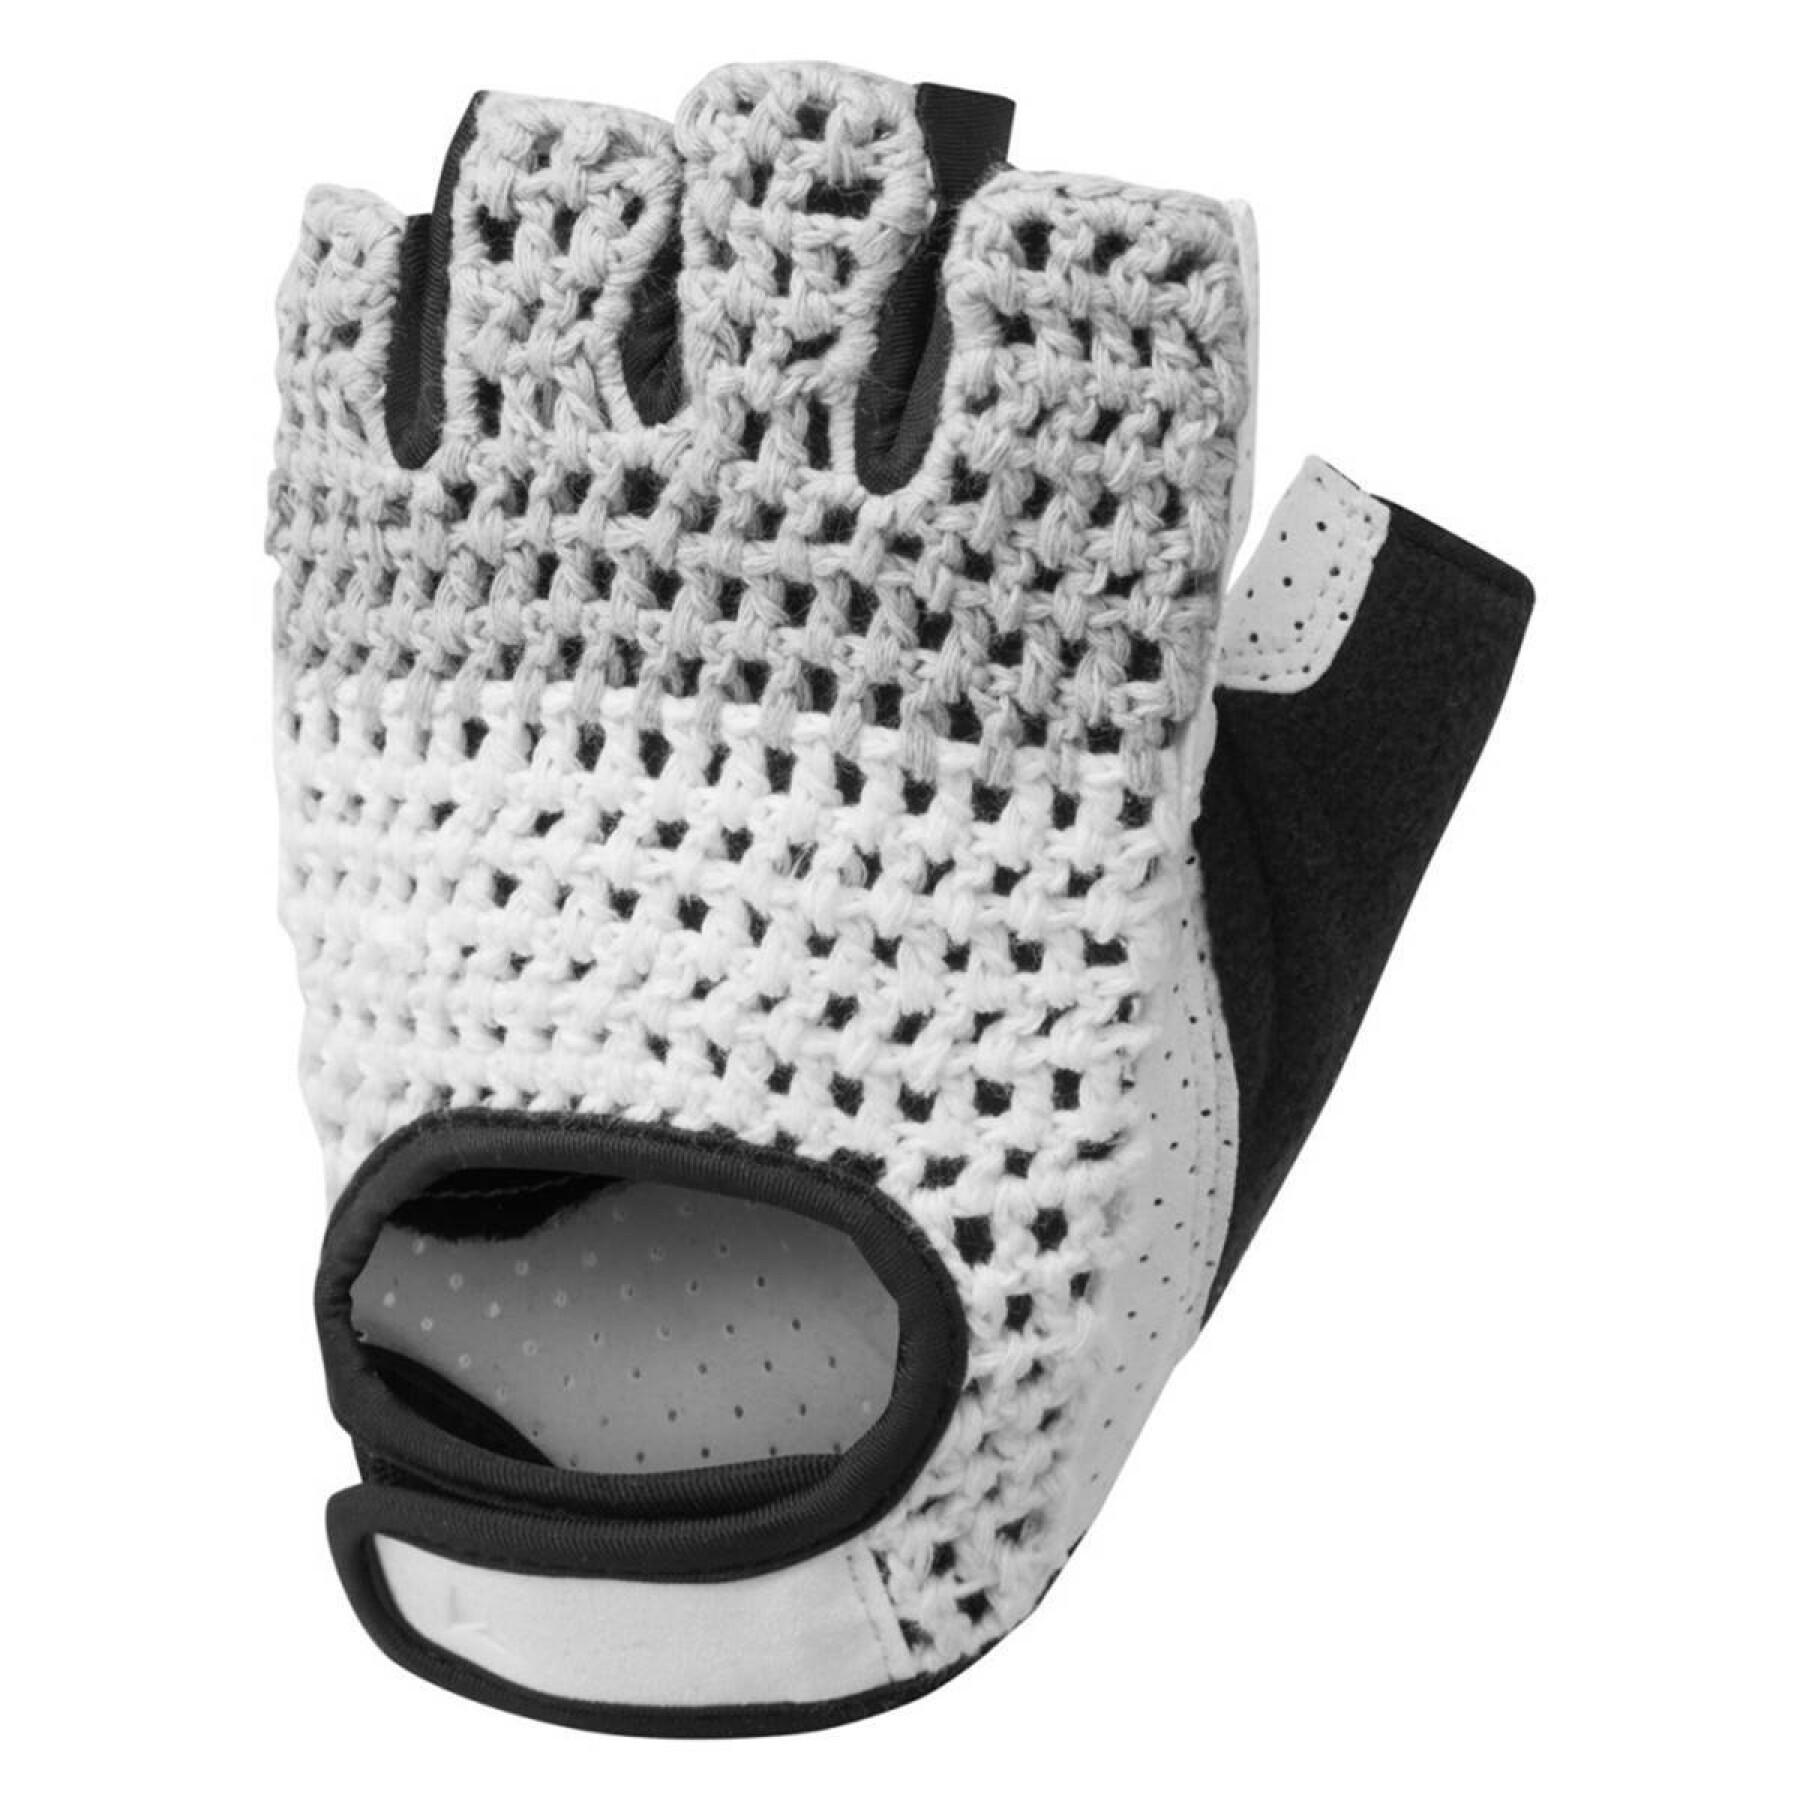 Short gloves Altura Crochet 2022